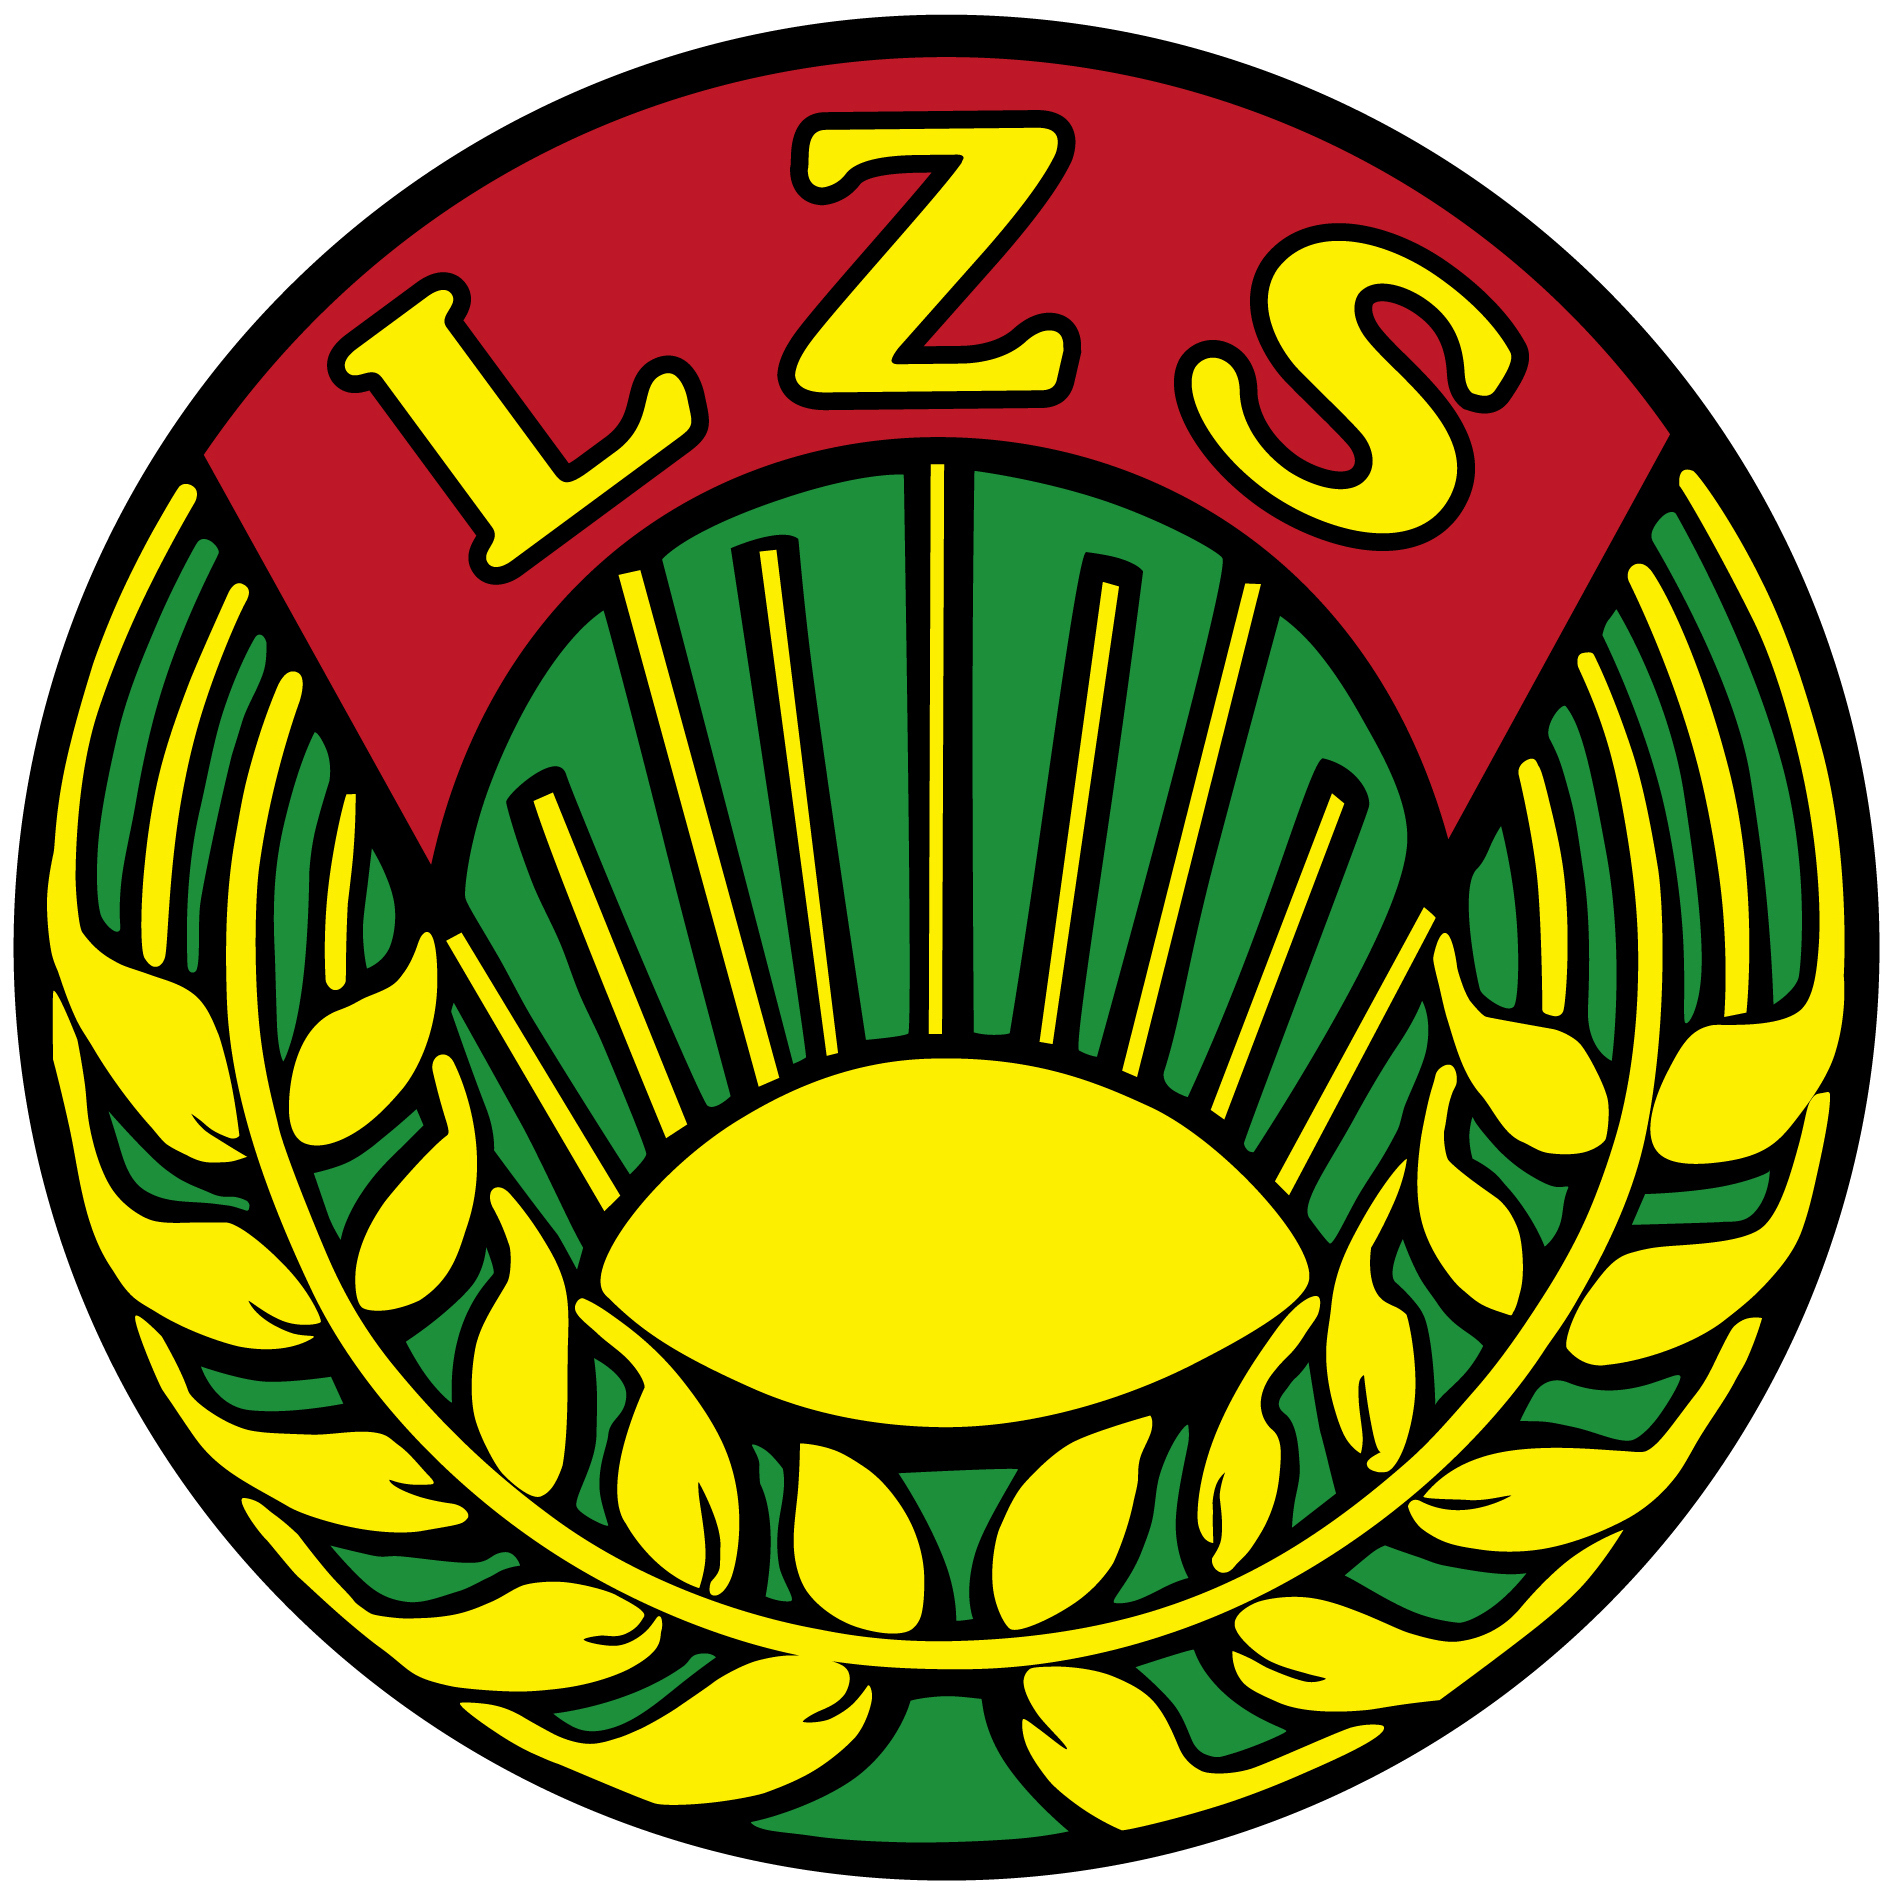 Logo_LZS_RGB